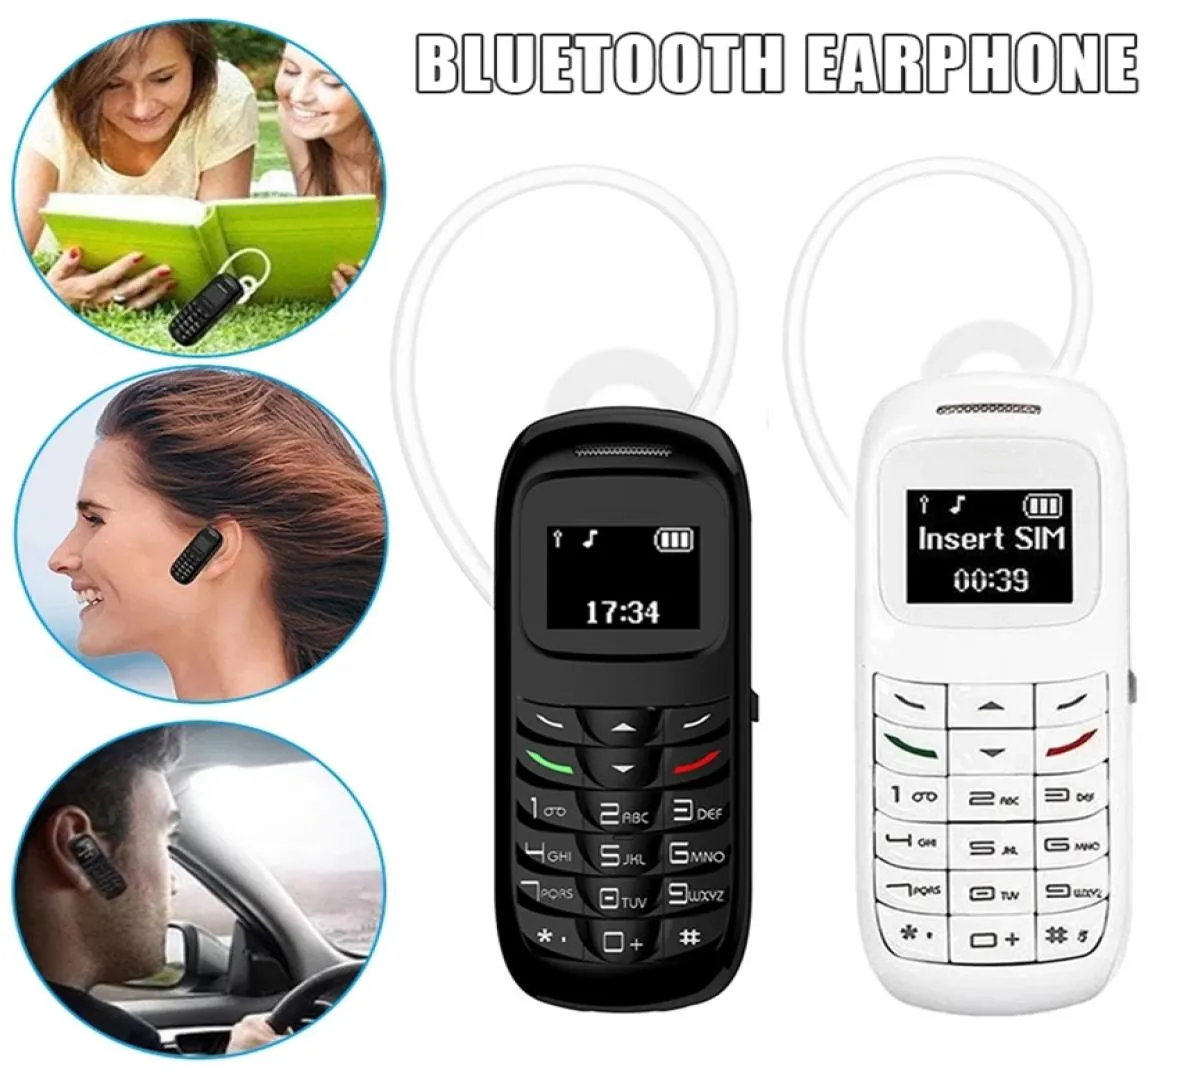 ロック解除されたスーパーミニファッションBluetooth携帯電話シングルシムカードGSMマジックボイスBluetoothイヤホンヘッドセットBTダイヤラー携帯電話